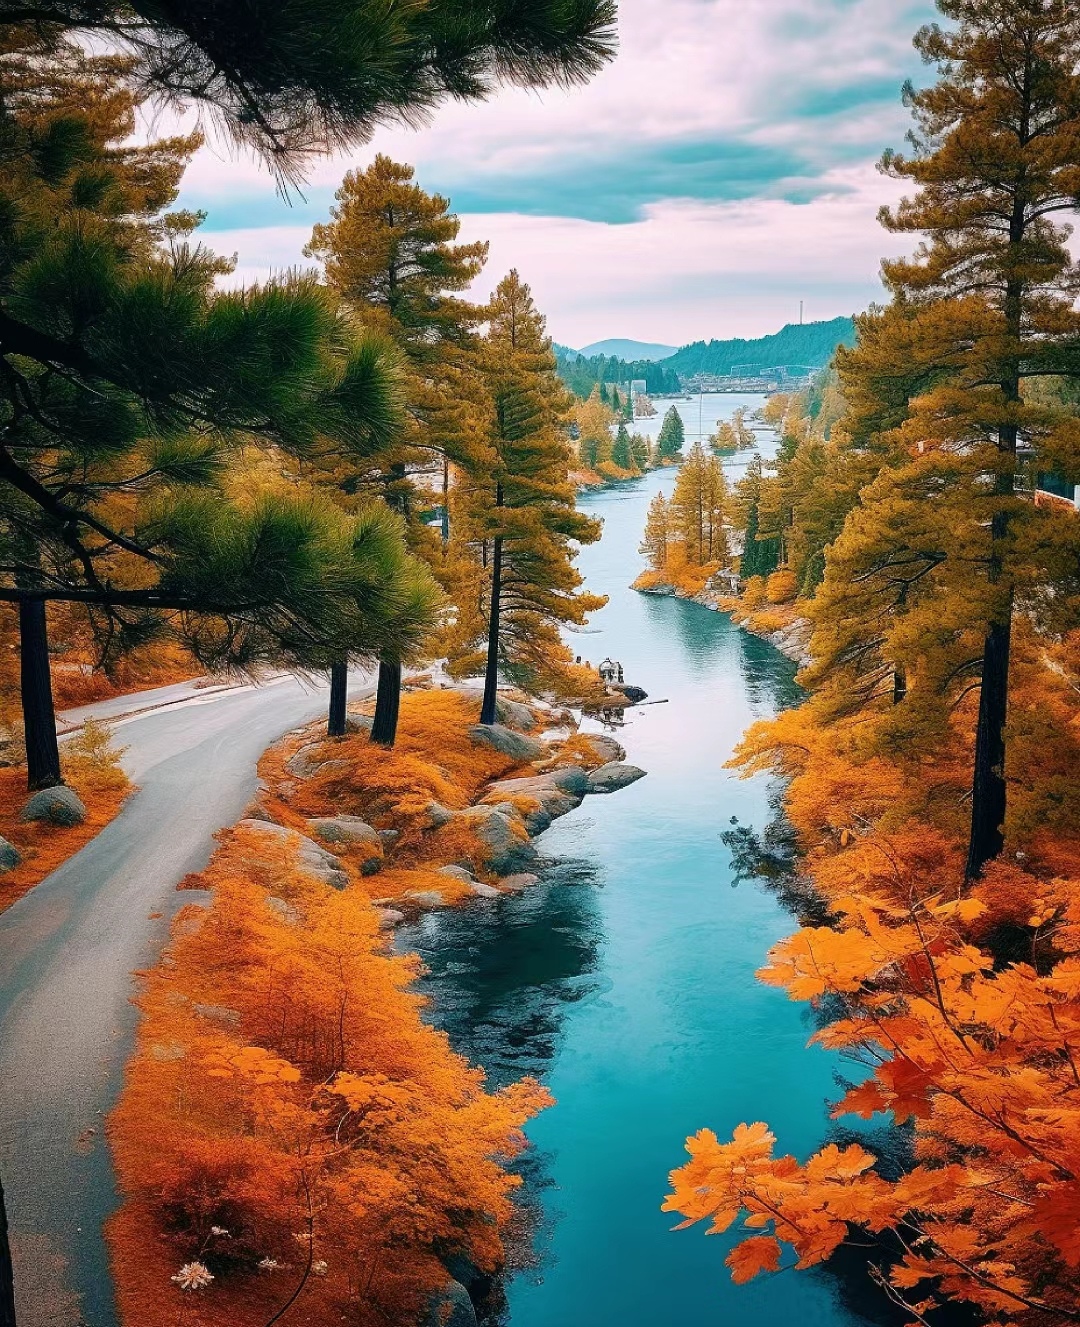 特别是在秋天,湖水清澈见底,山峦在阳光下透露出绚丽多彩的秋叶色彩